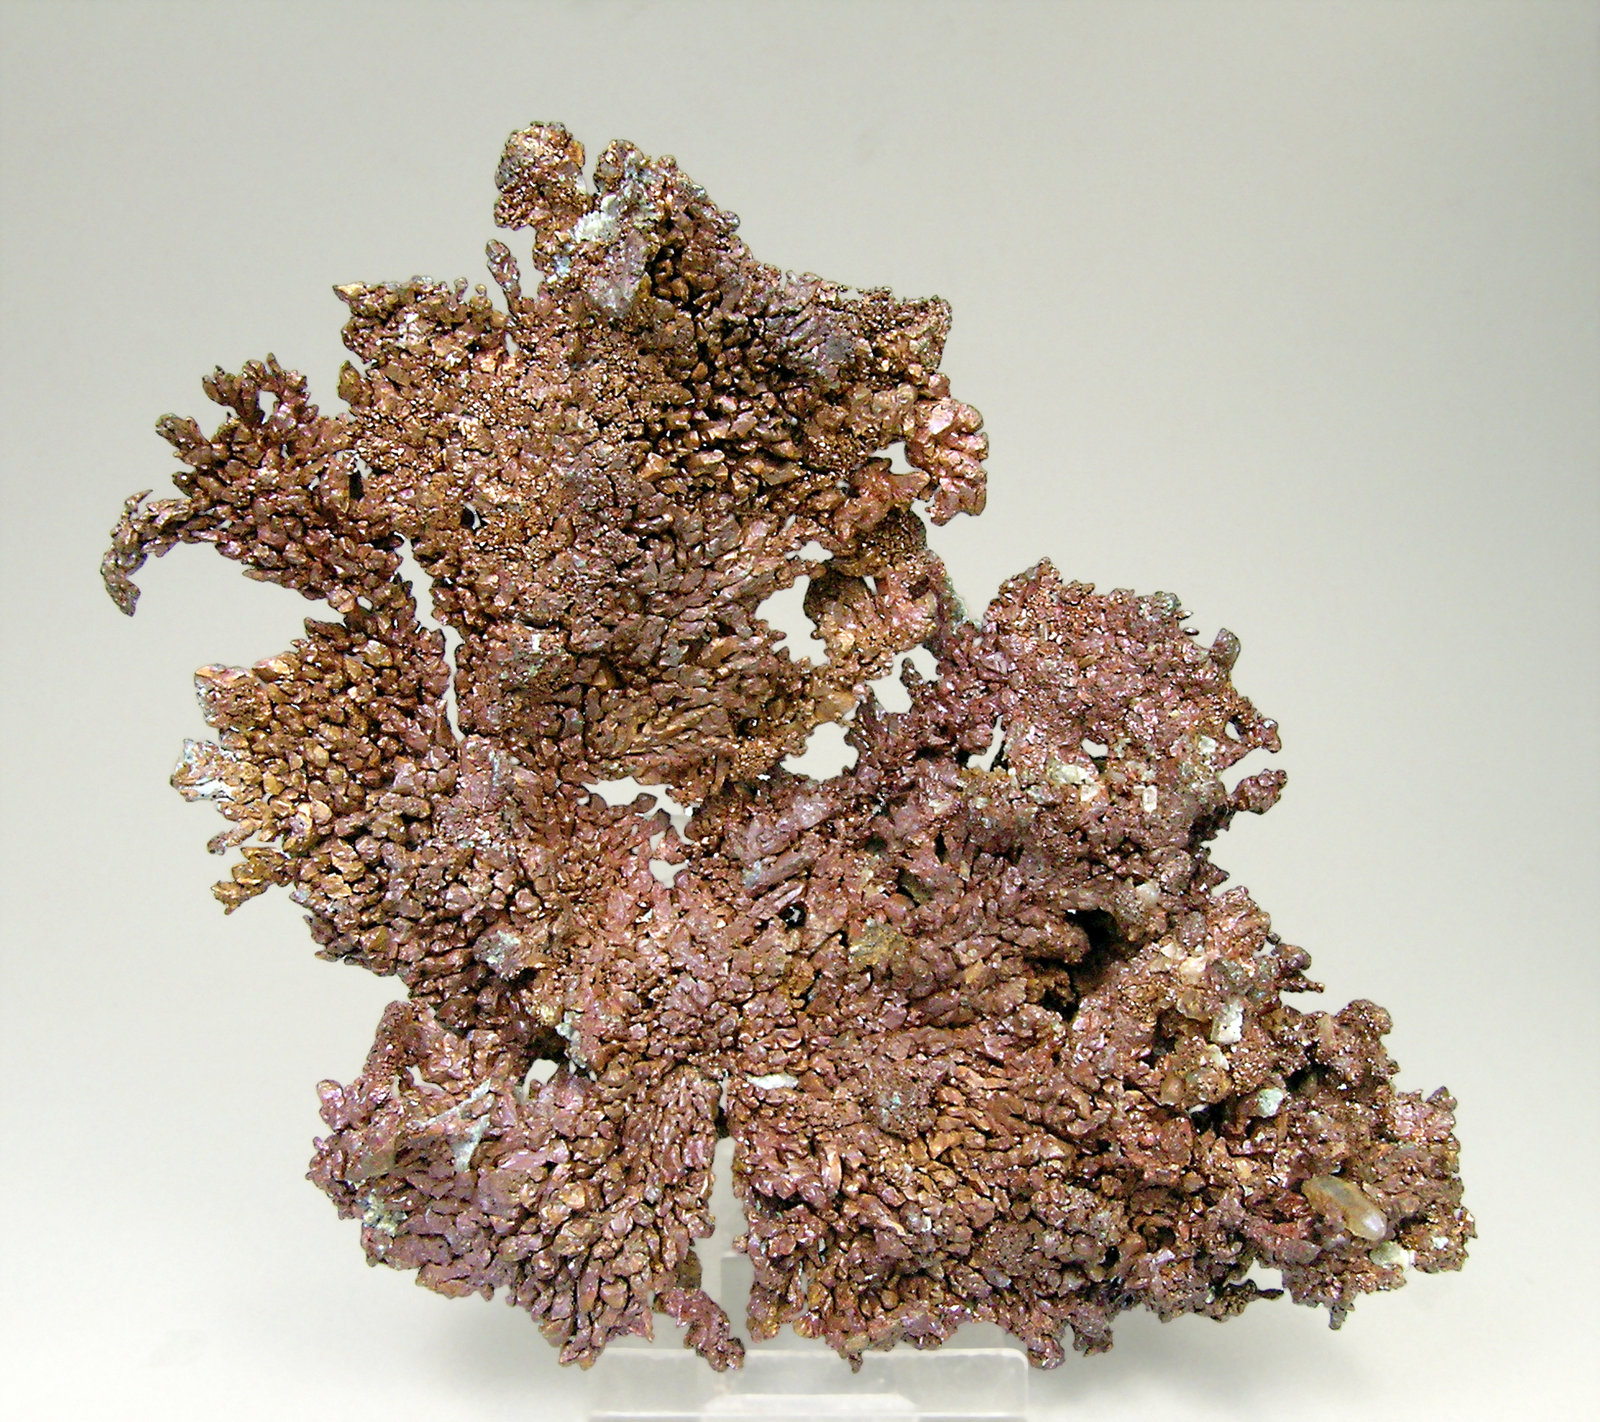 specimens/s_imagesN4/Copper-ER37N4f.jpg